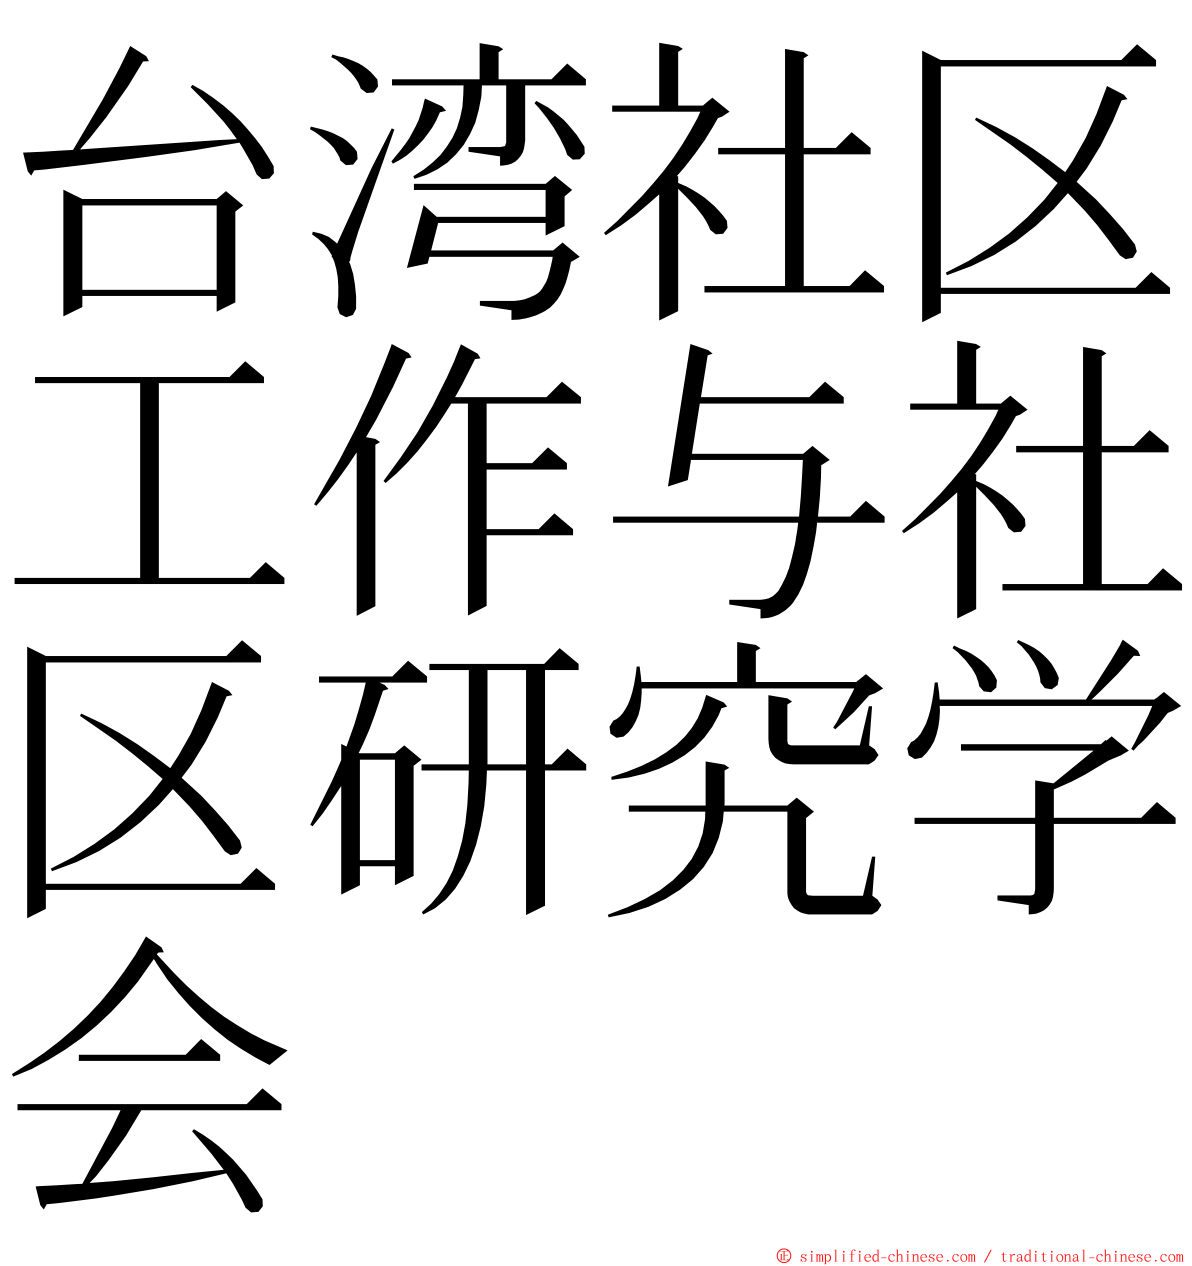 台湾社区工作与社区研究学会 ming font